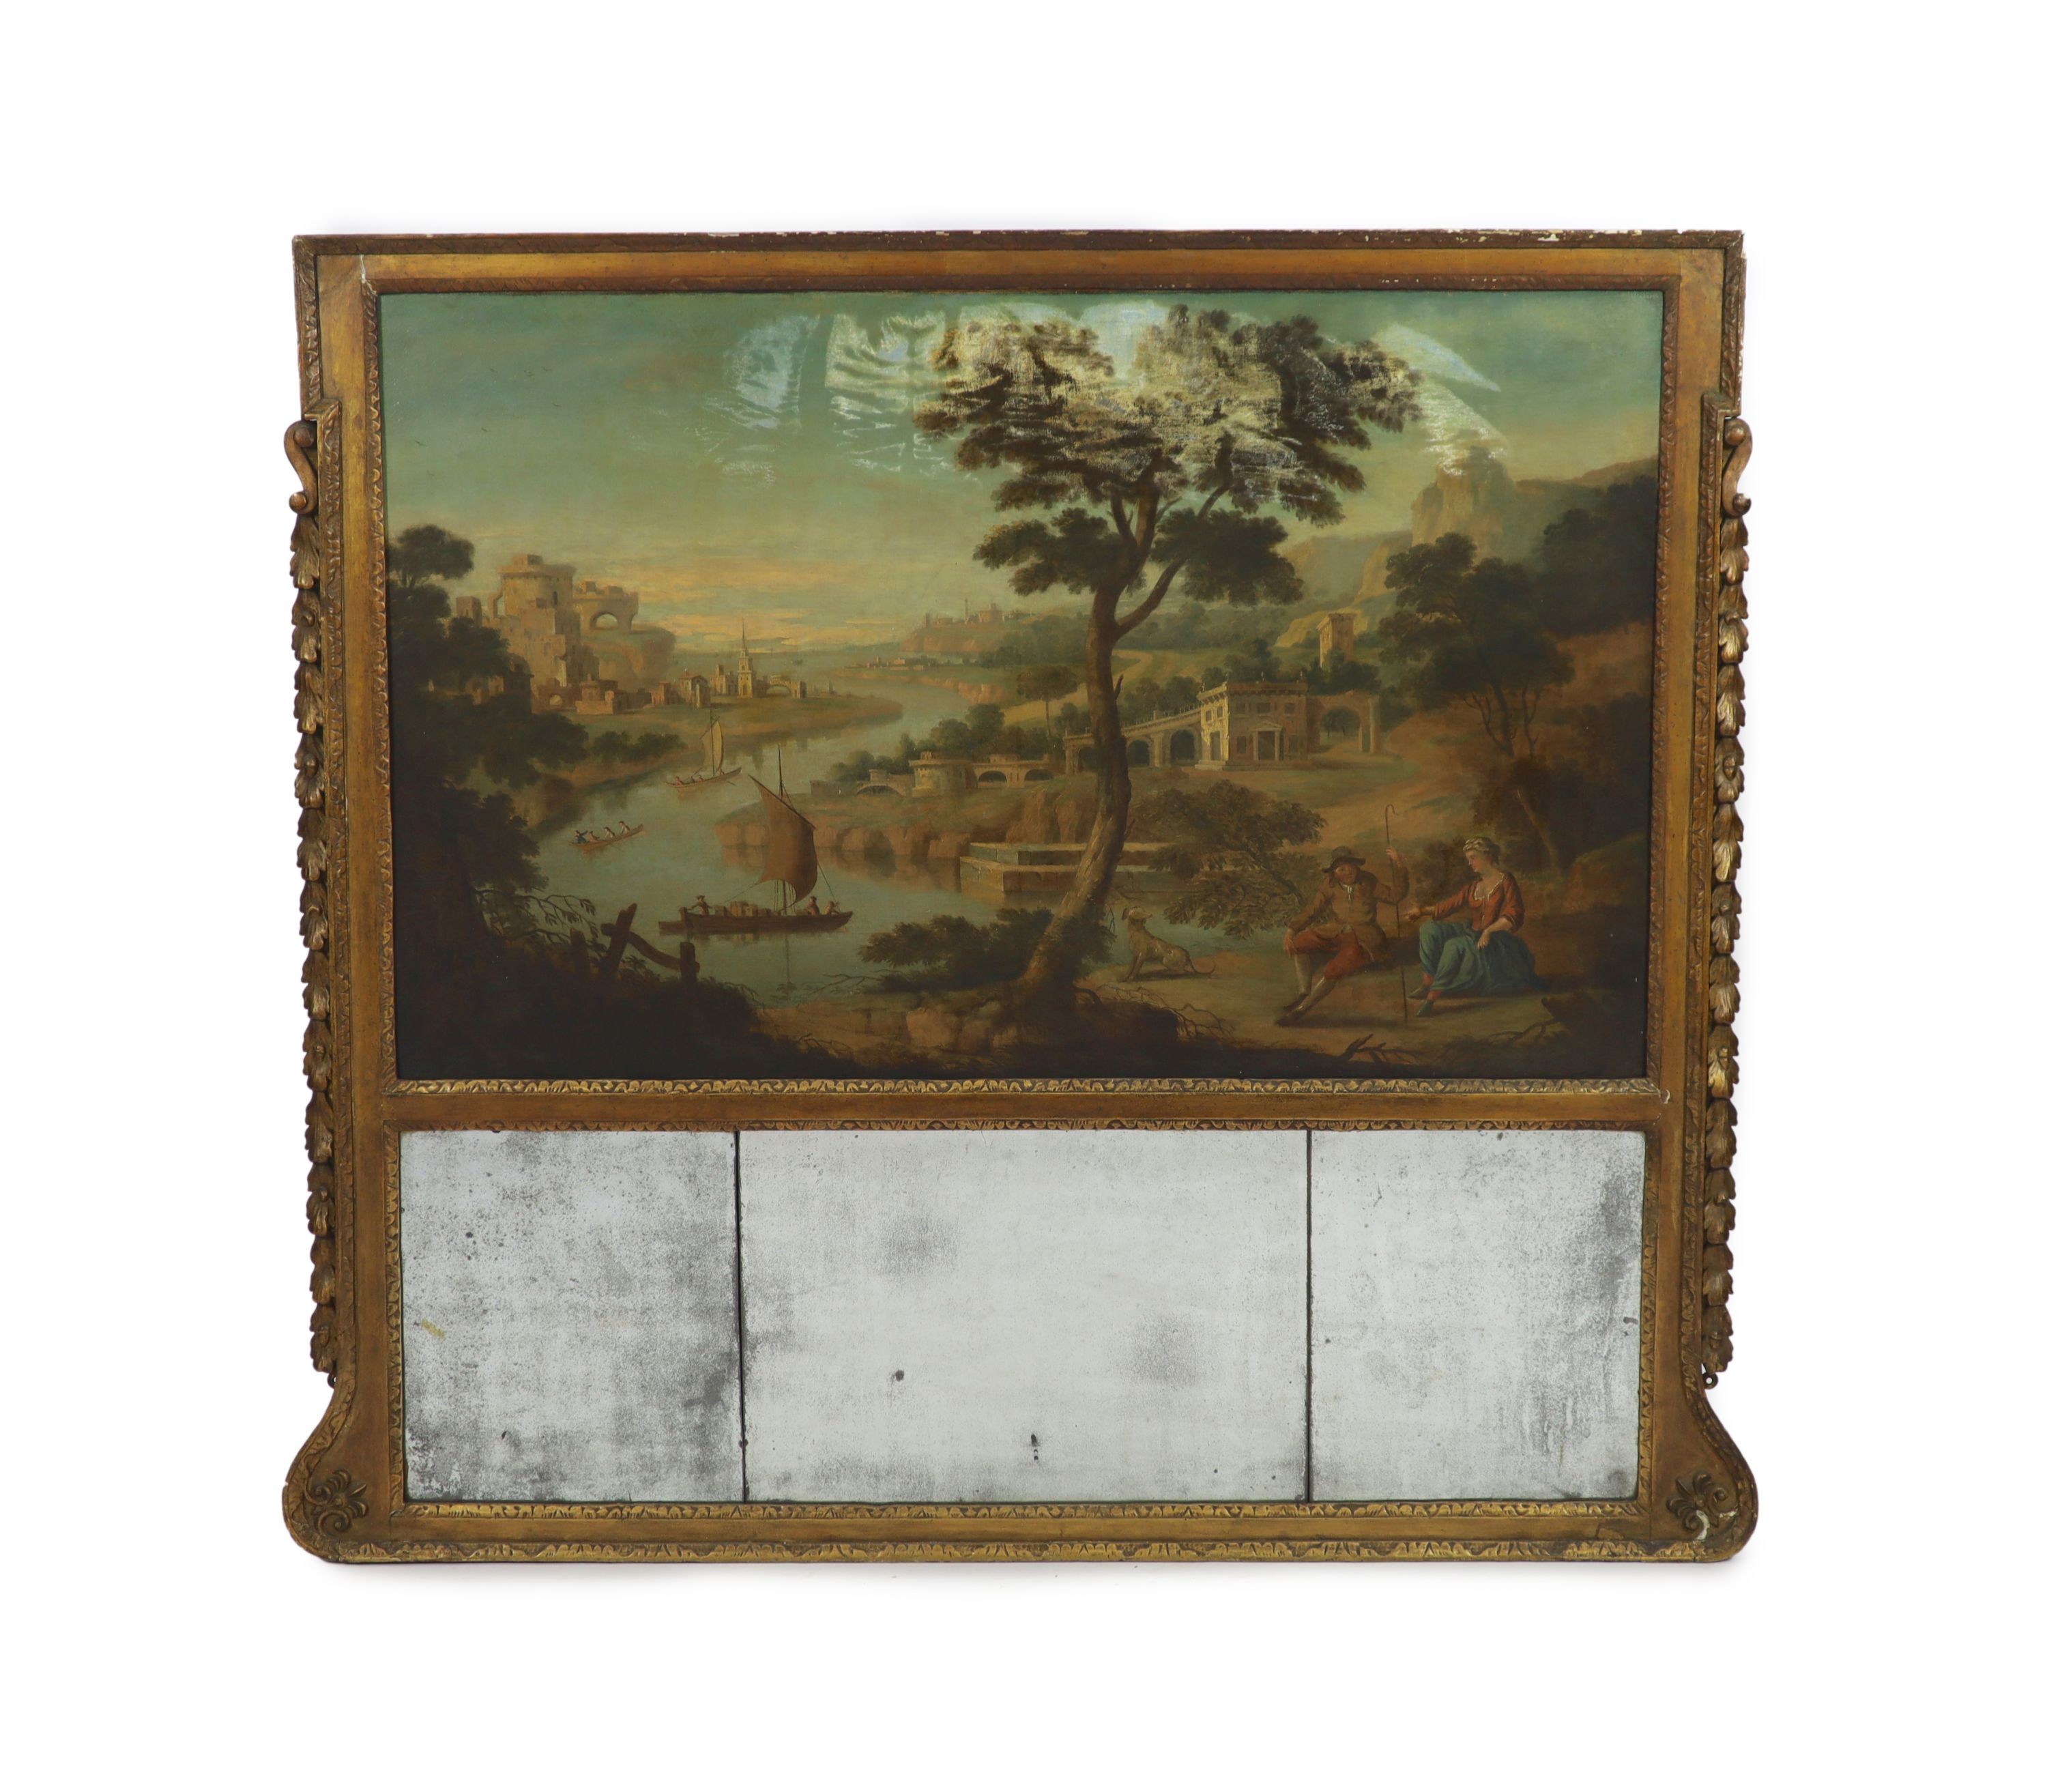 English School circa 1900, Italianate river landscape, Oil on canvas, 75 x 120cm. Overall 128 x 144cm.